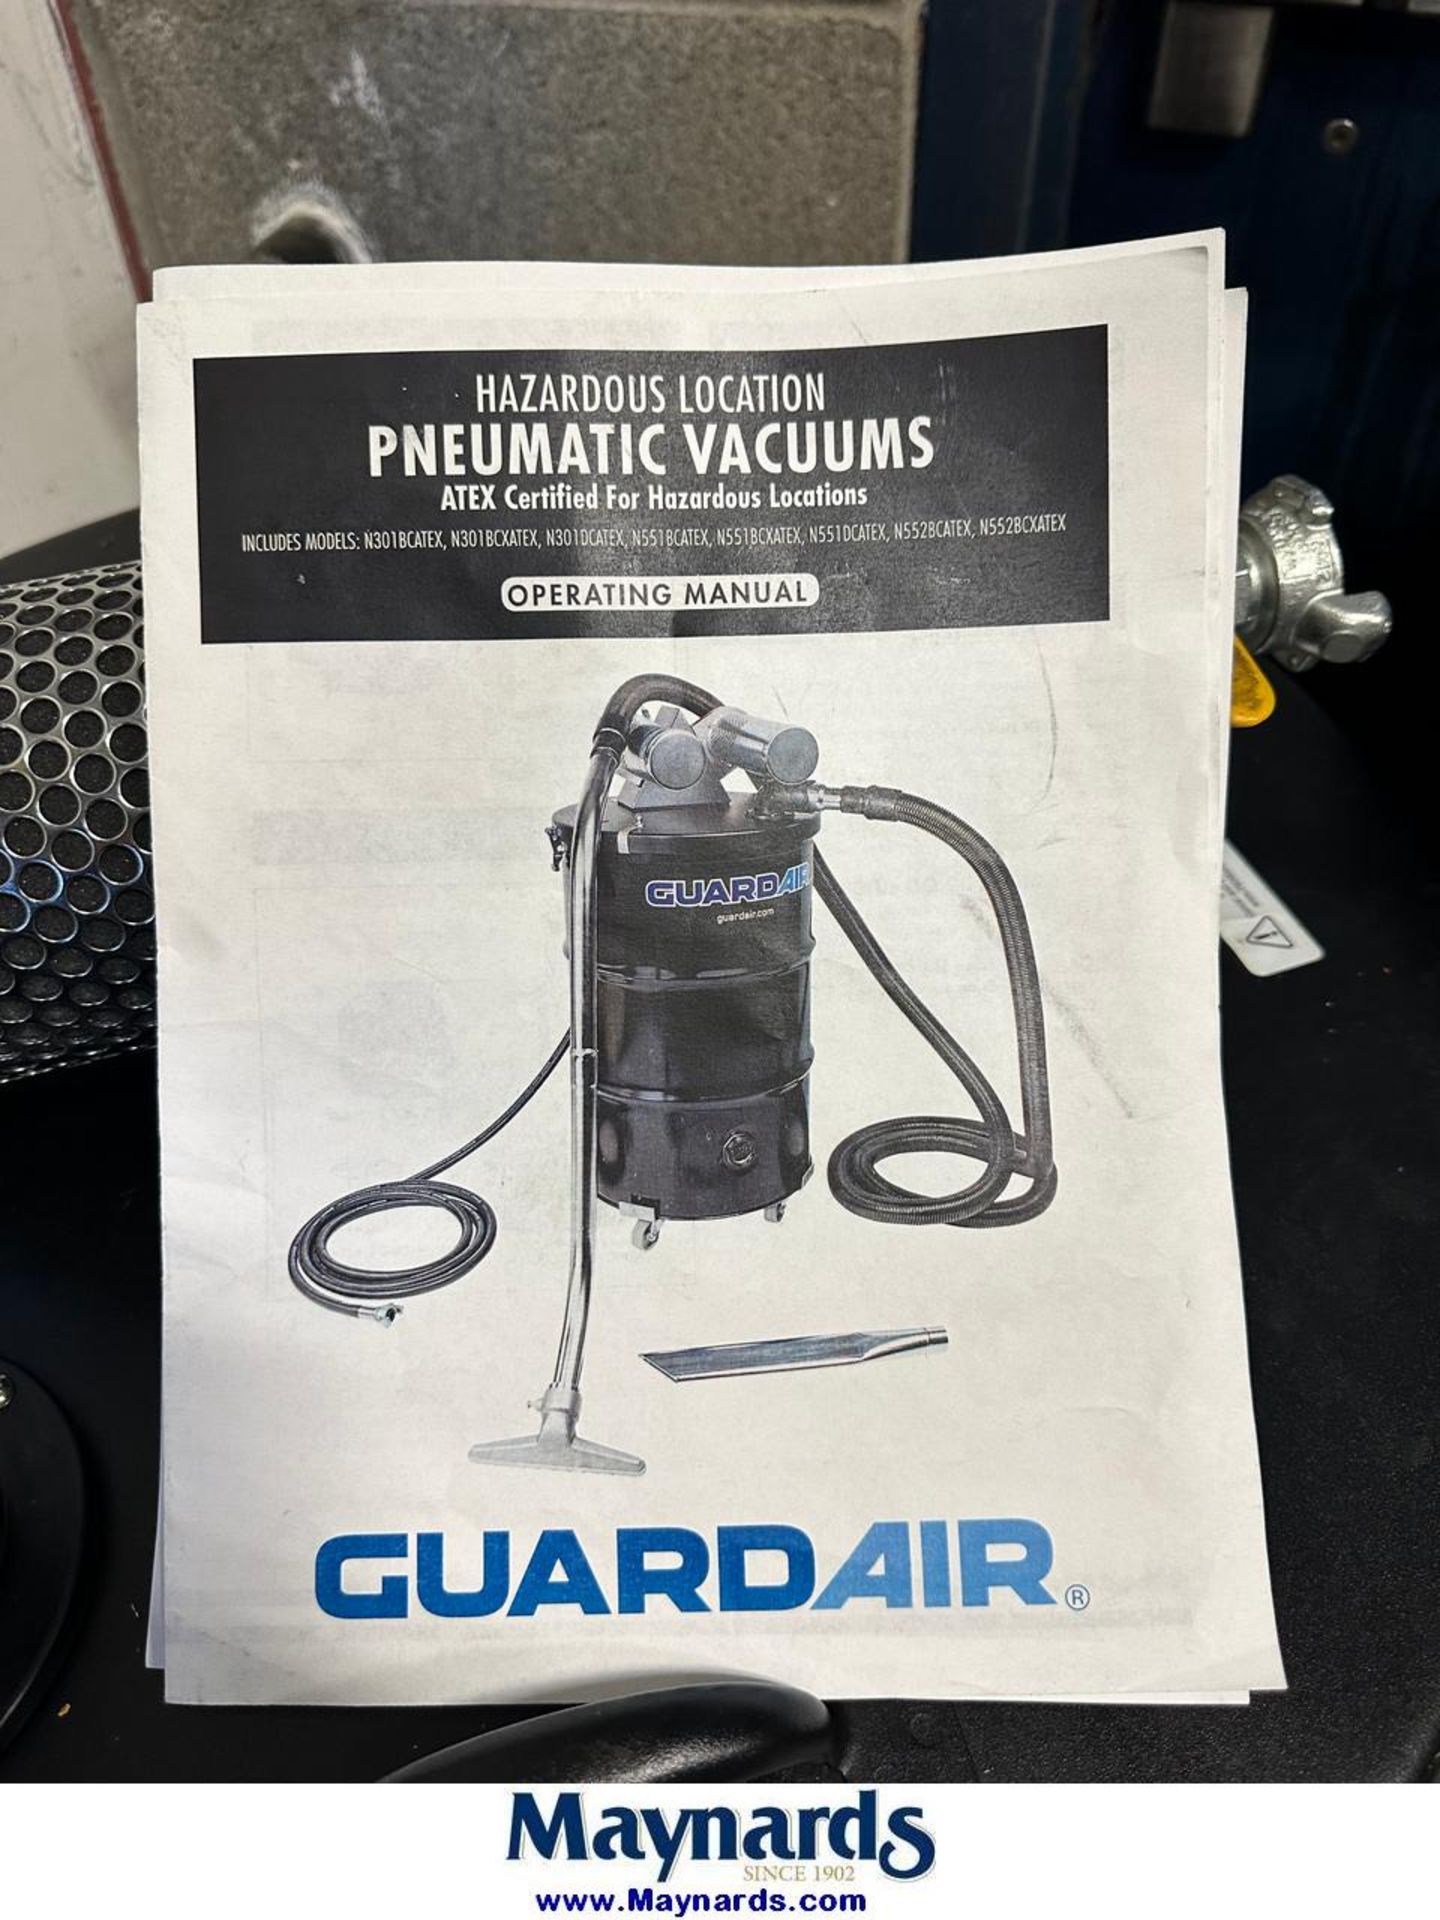 GuardAir pneumatic vacuum - Image 2 of 2